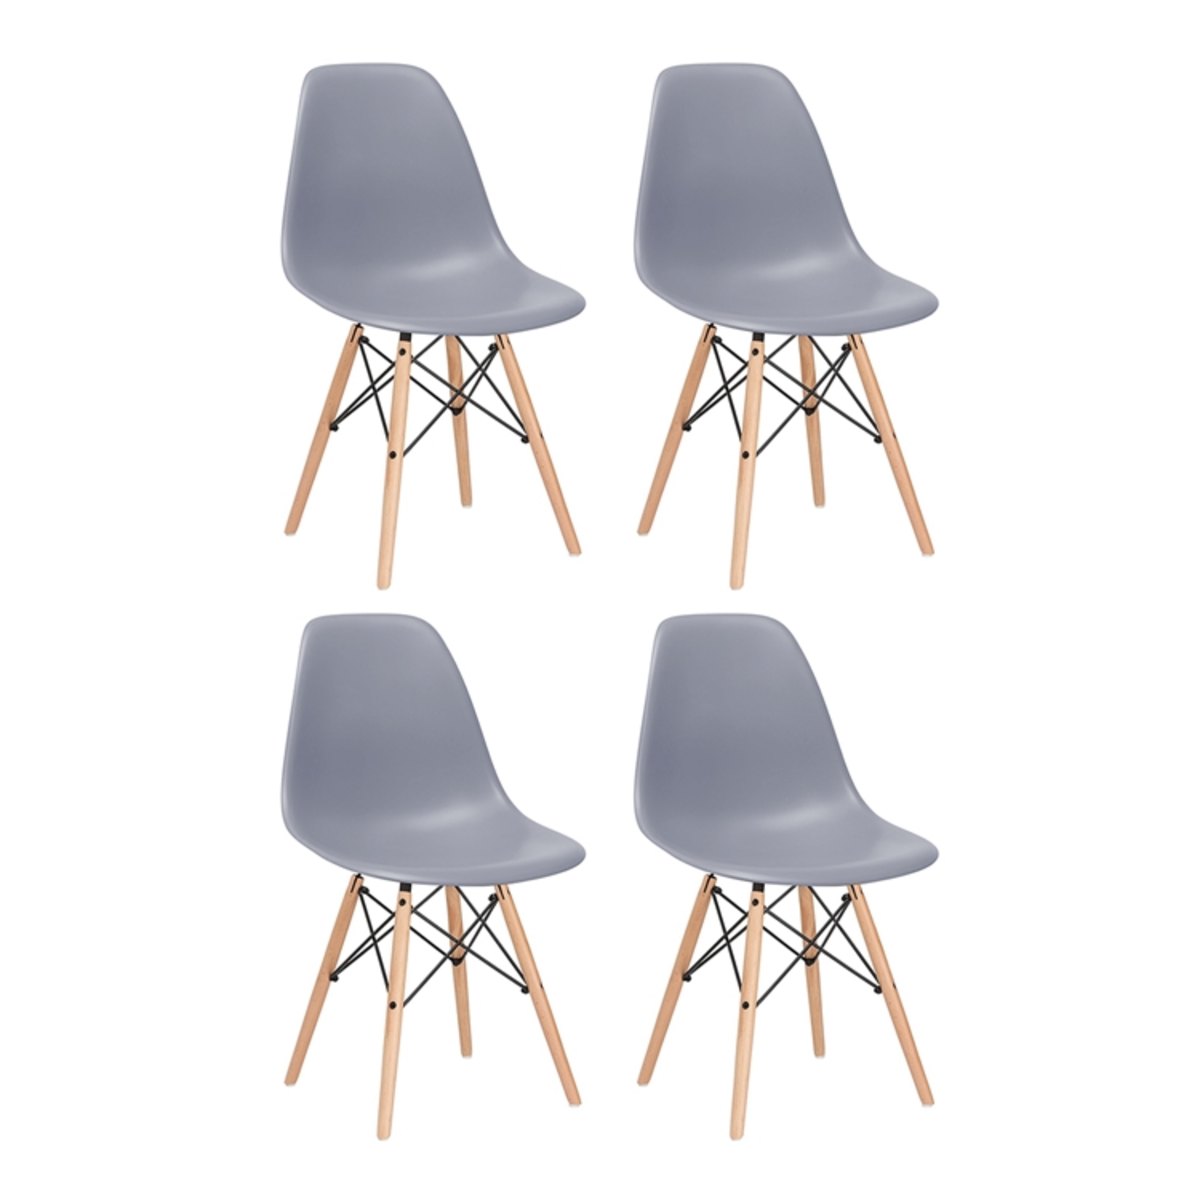 KIT - 4 x cadeiras Eames DSW - Madeira clara - Cinza escuro